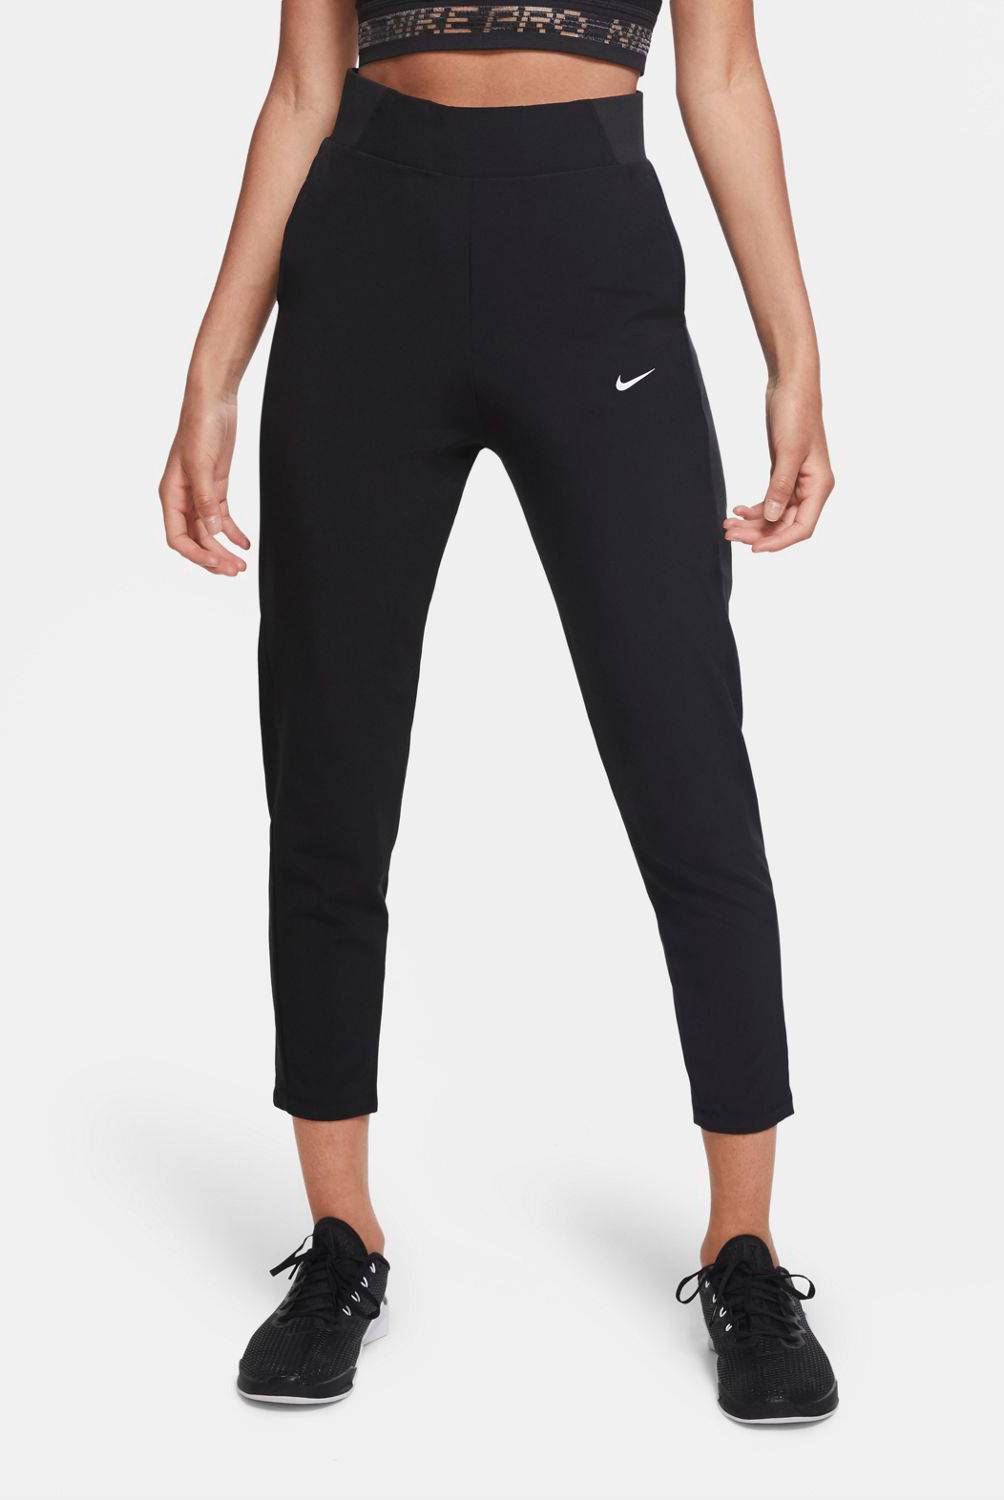 NIKE - Nike Pantalón De Buzo Mujer